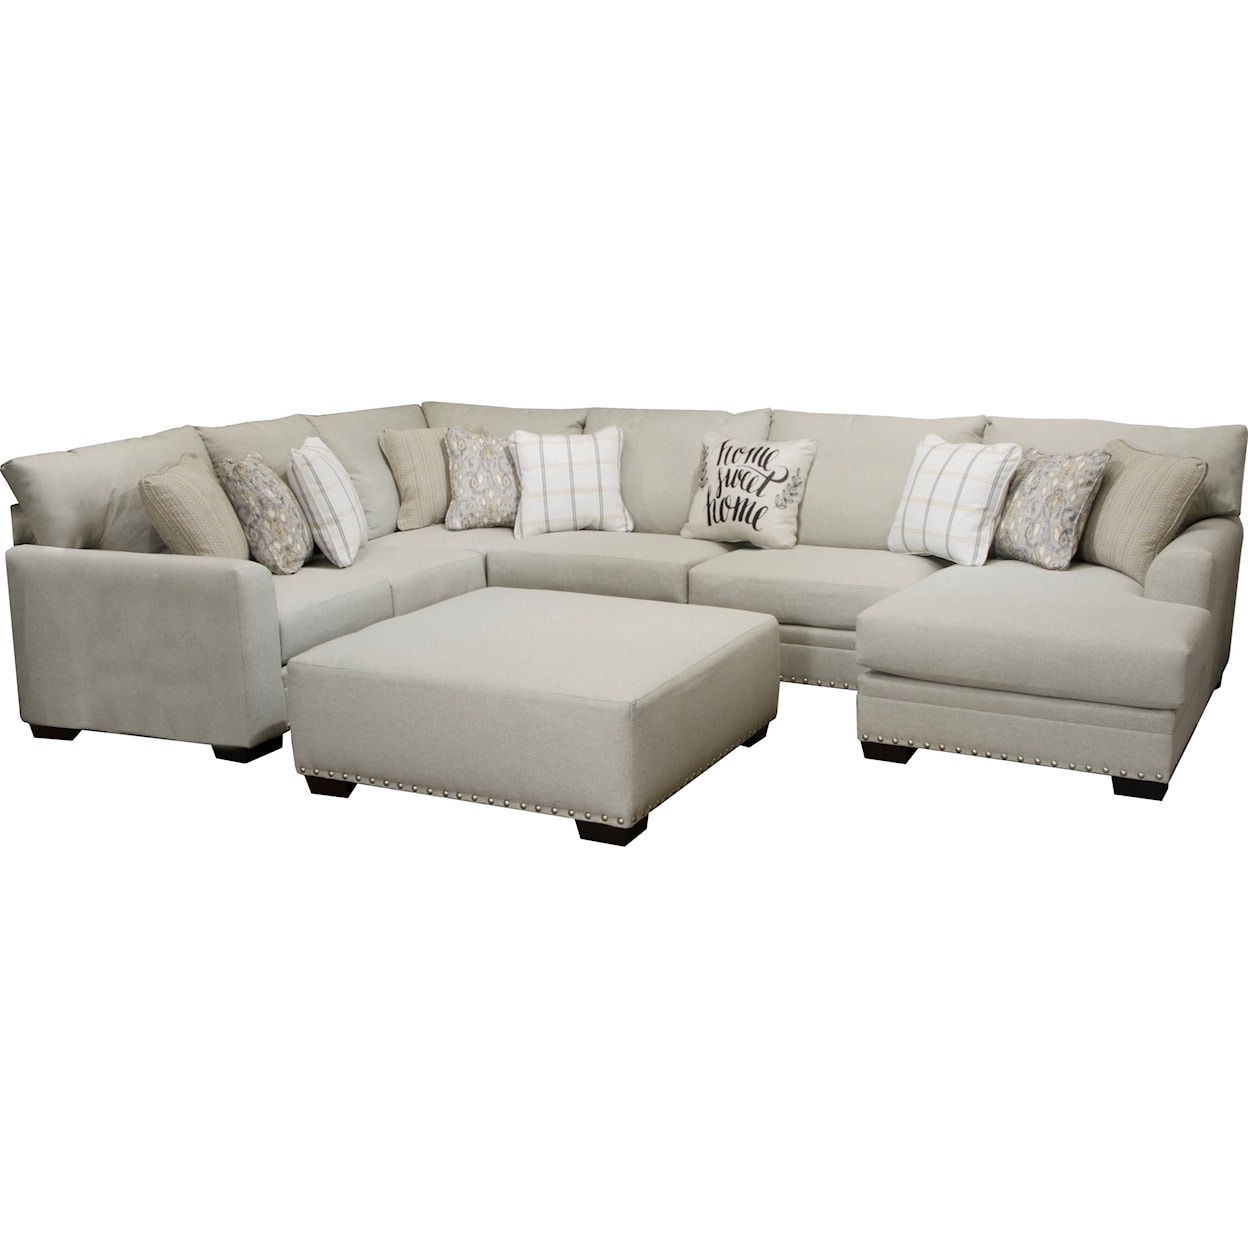 Carolina Furniture 4478 Middleton U-Shaped Sectional